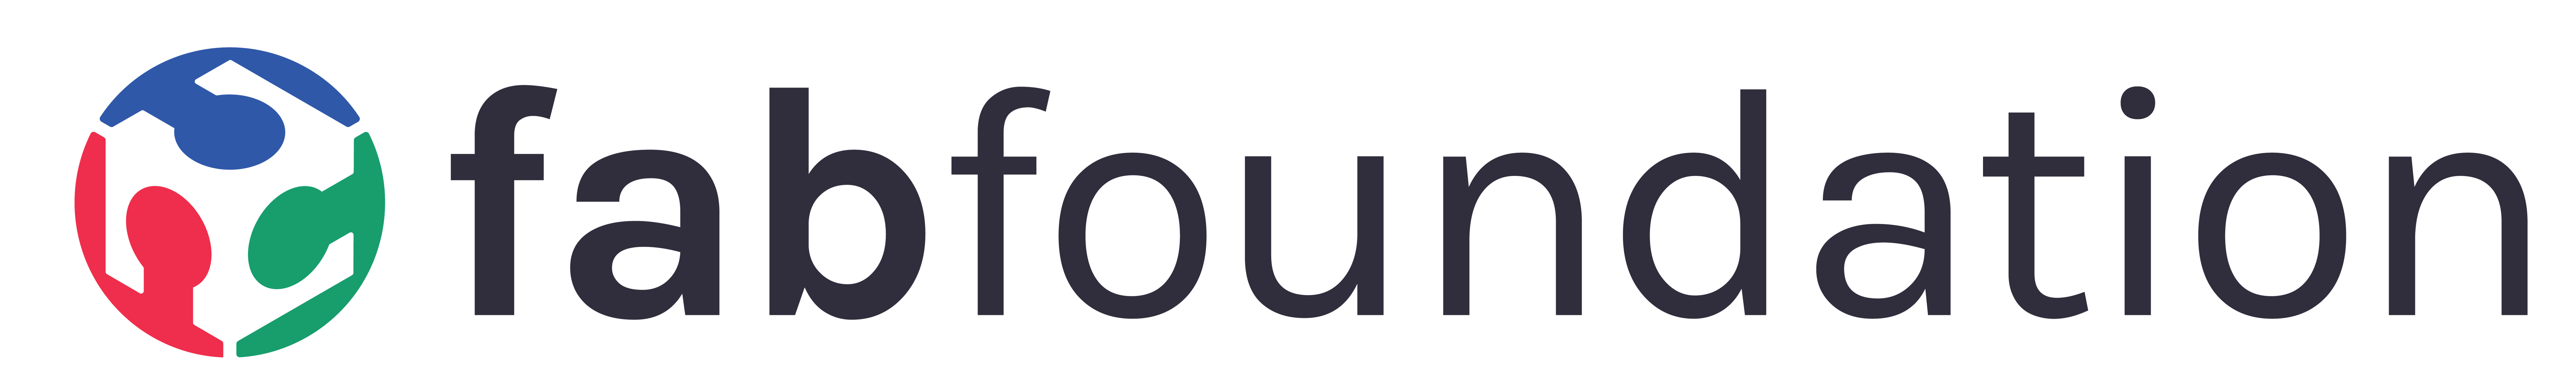 Fab Foundation Logo